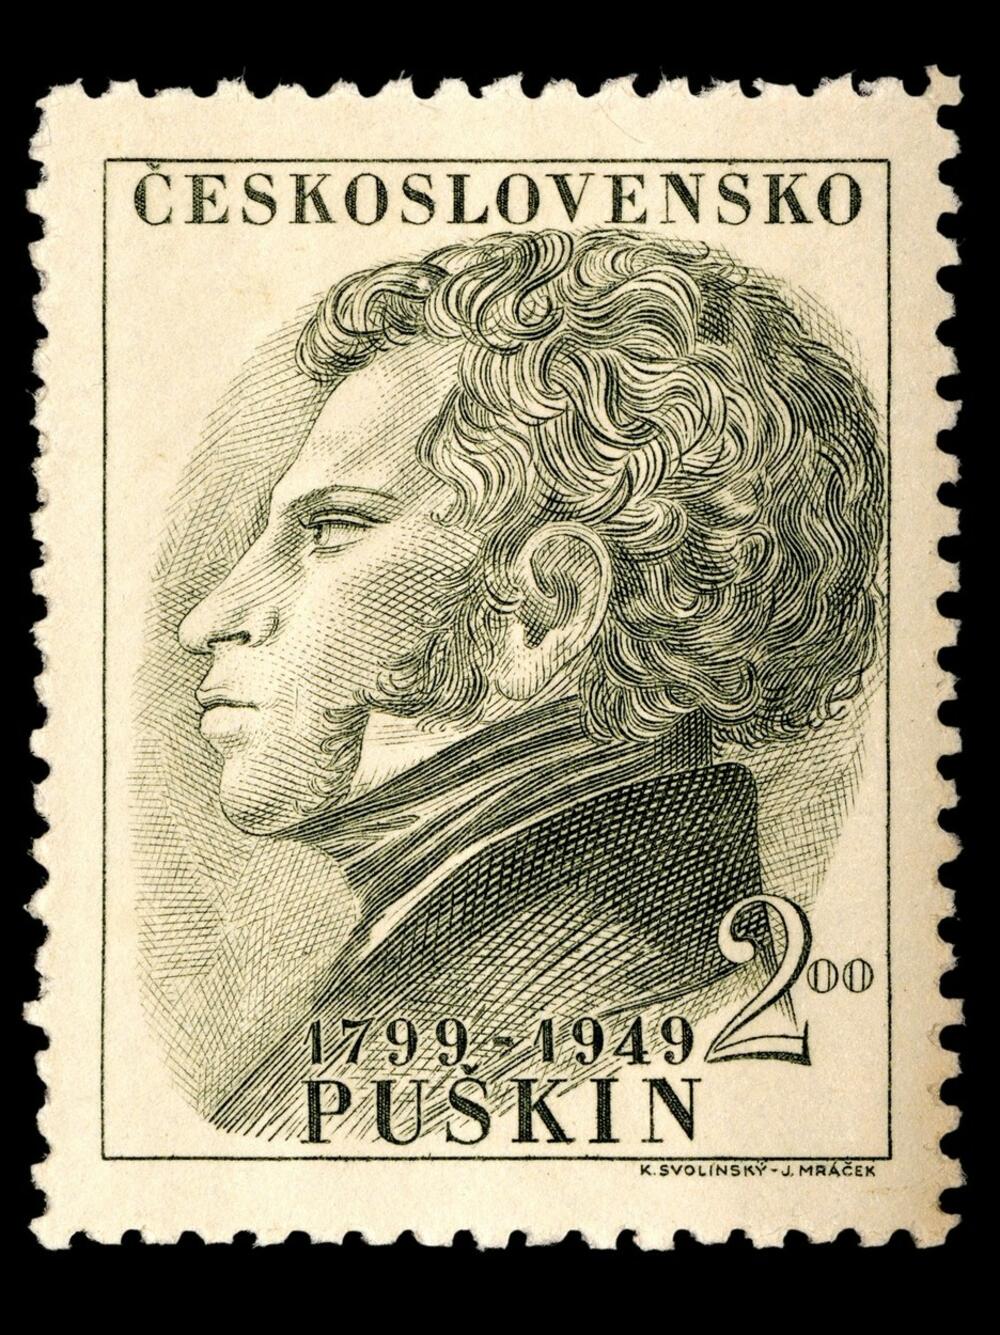 Aleksandar Puškin, Puškin